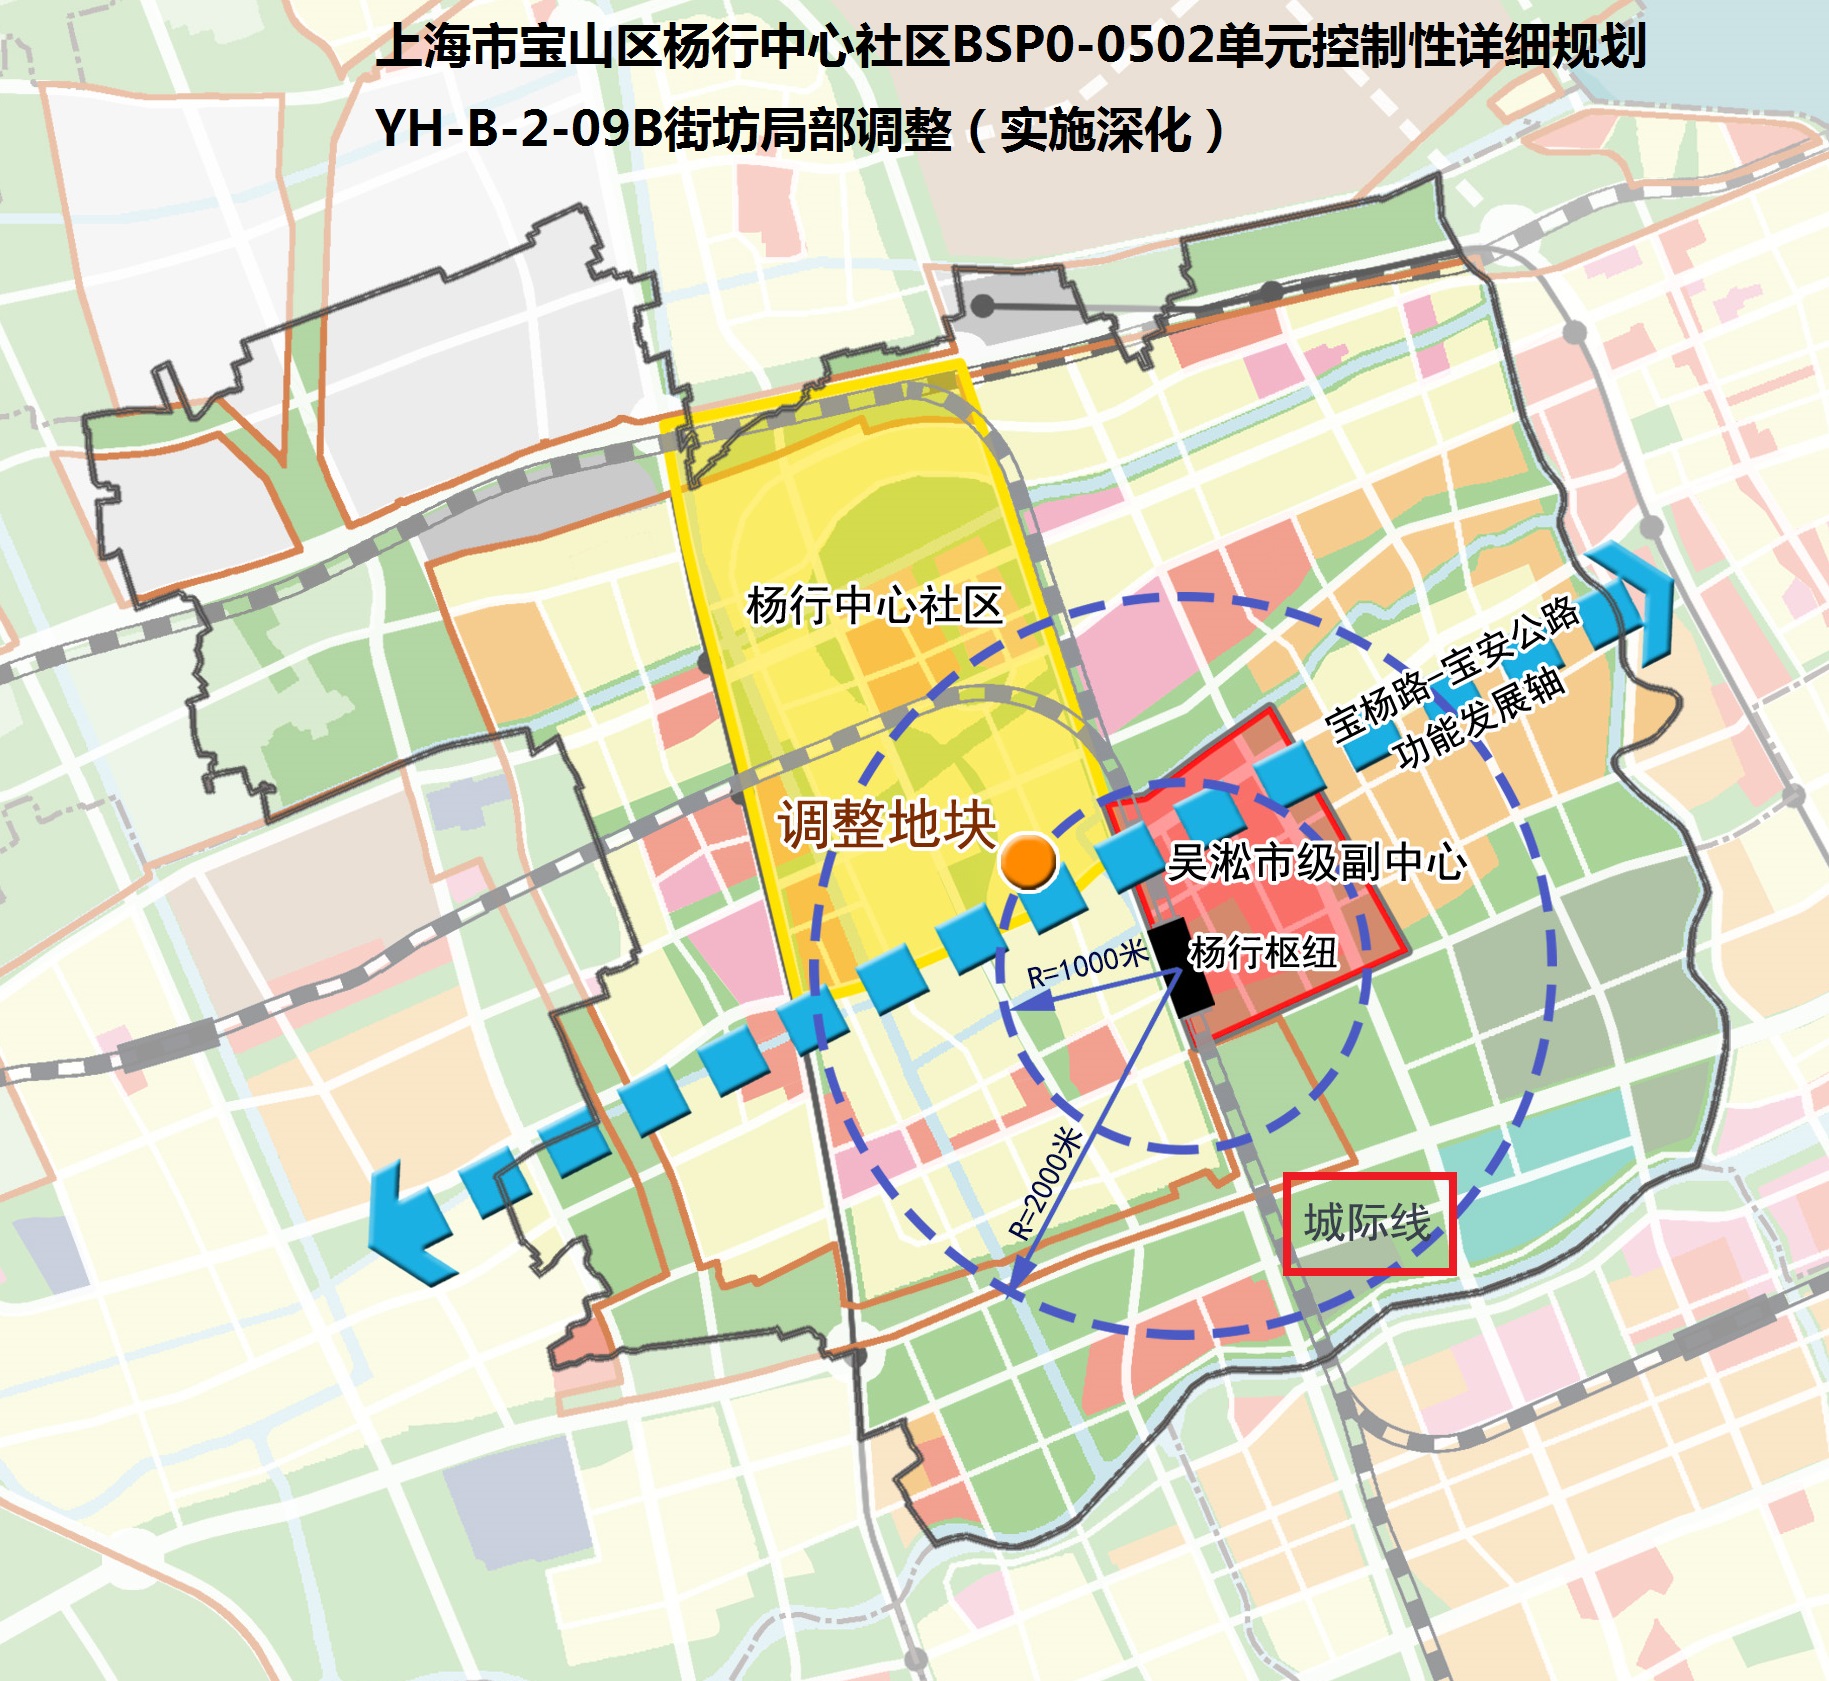 上海市宝山区杨行镇要通城际铁路并设站,东侧是吴淞市级副中心